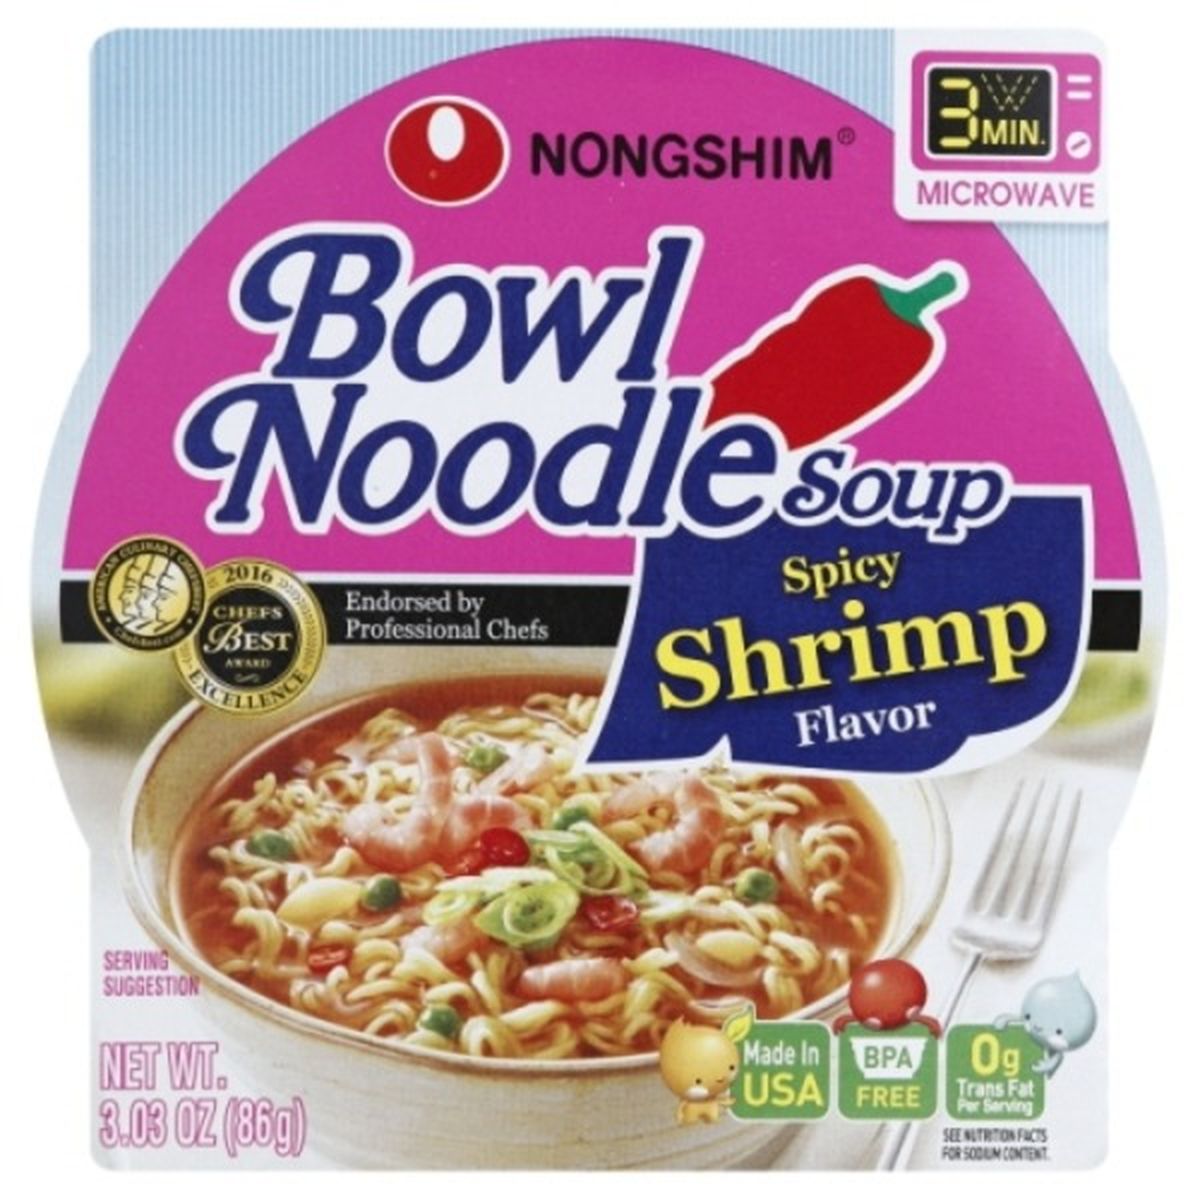 Calories in Nongshim Noodle Soup, Bowl, Spicy Shrimp Flavor